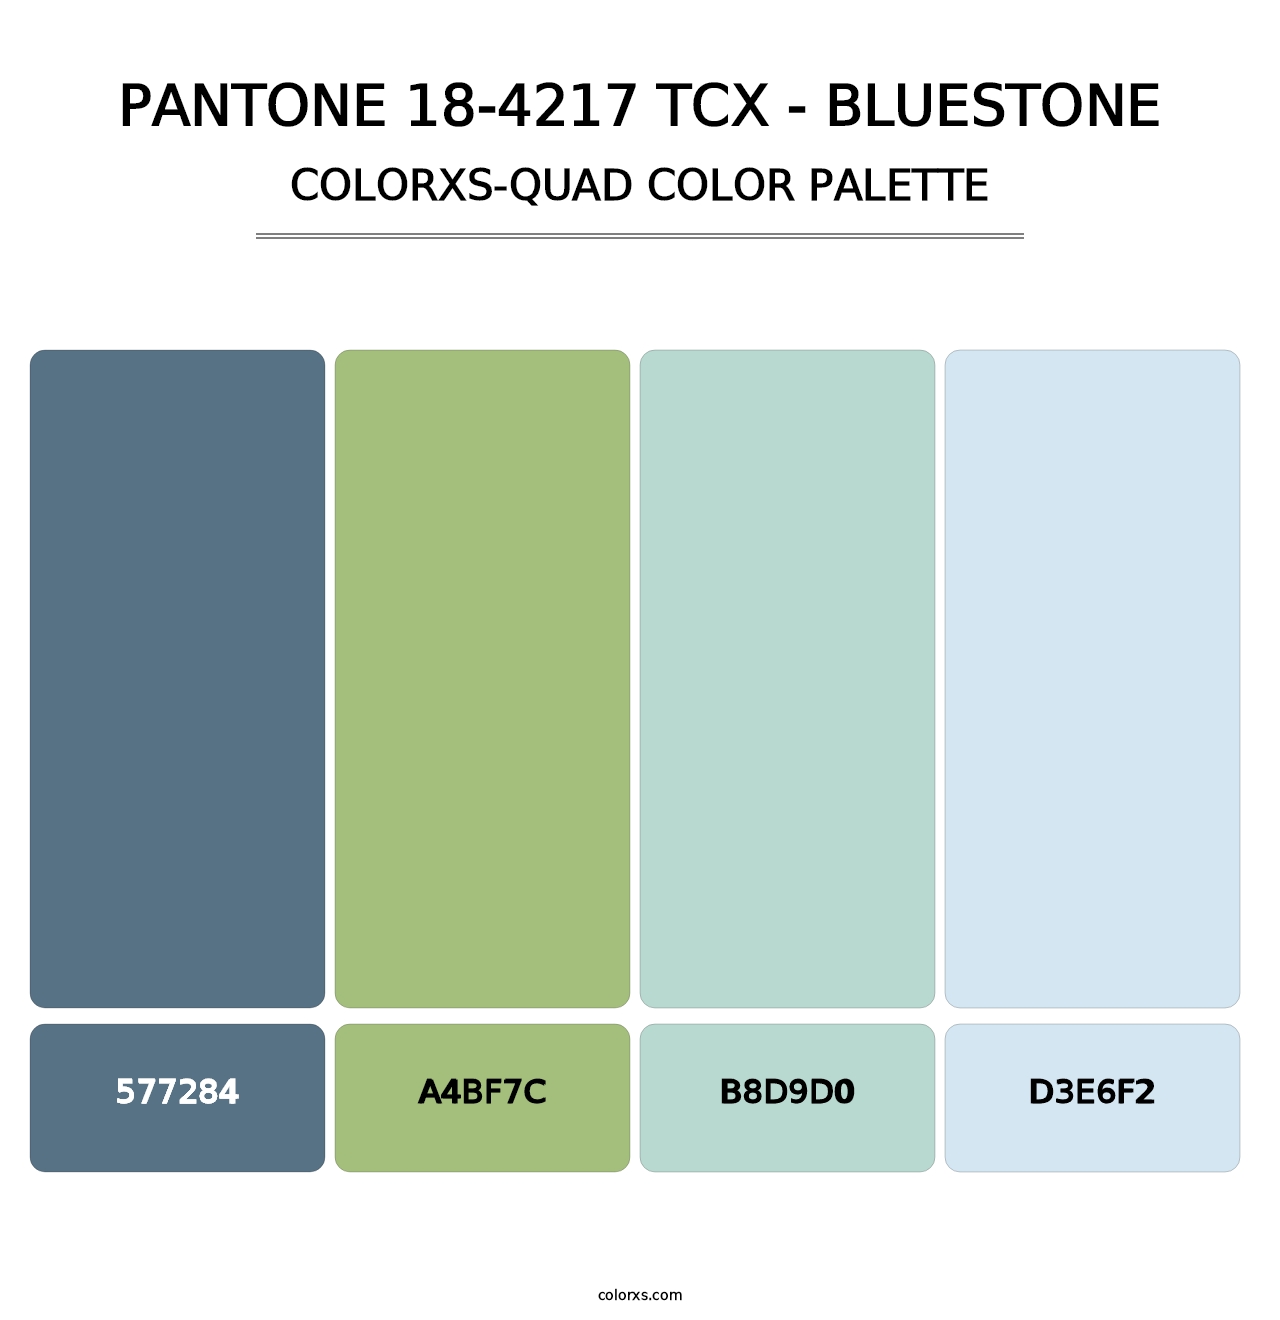 PANTONE 18-4217 TCX - Bluestone - Colorxs Quad Palette